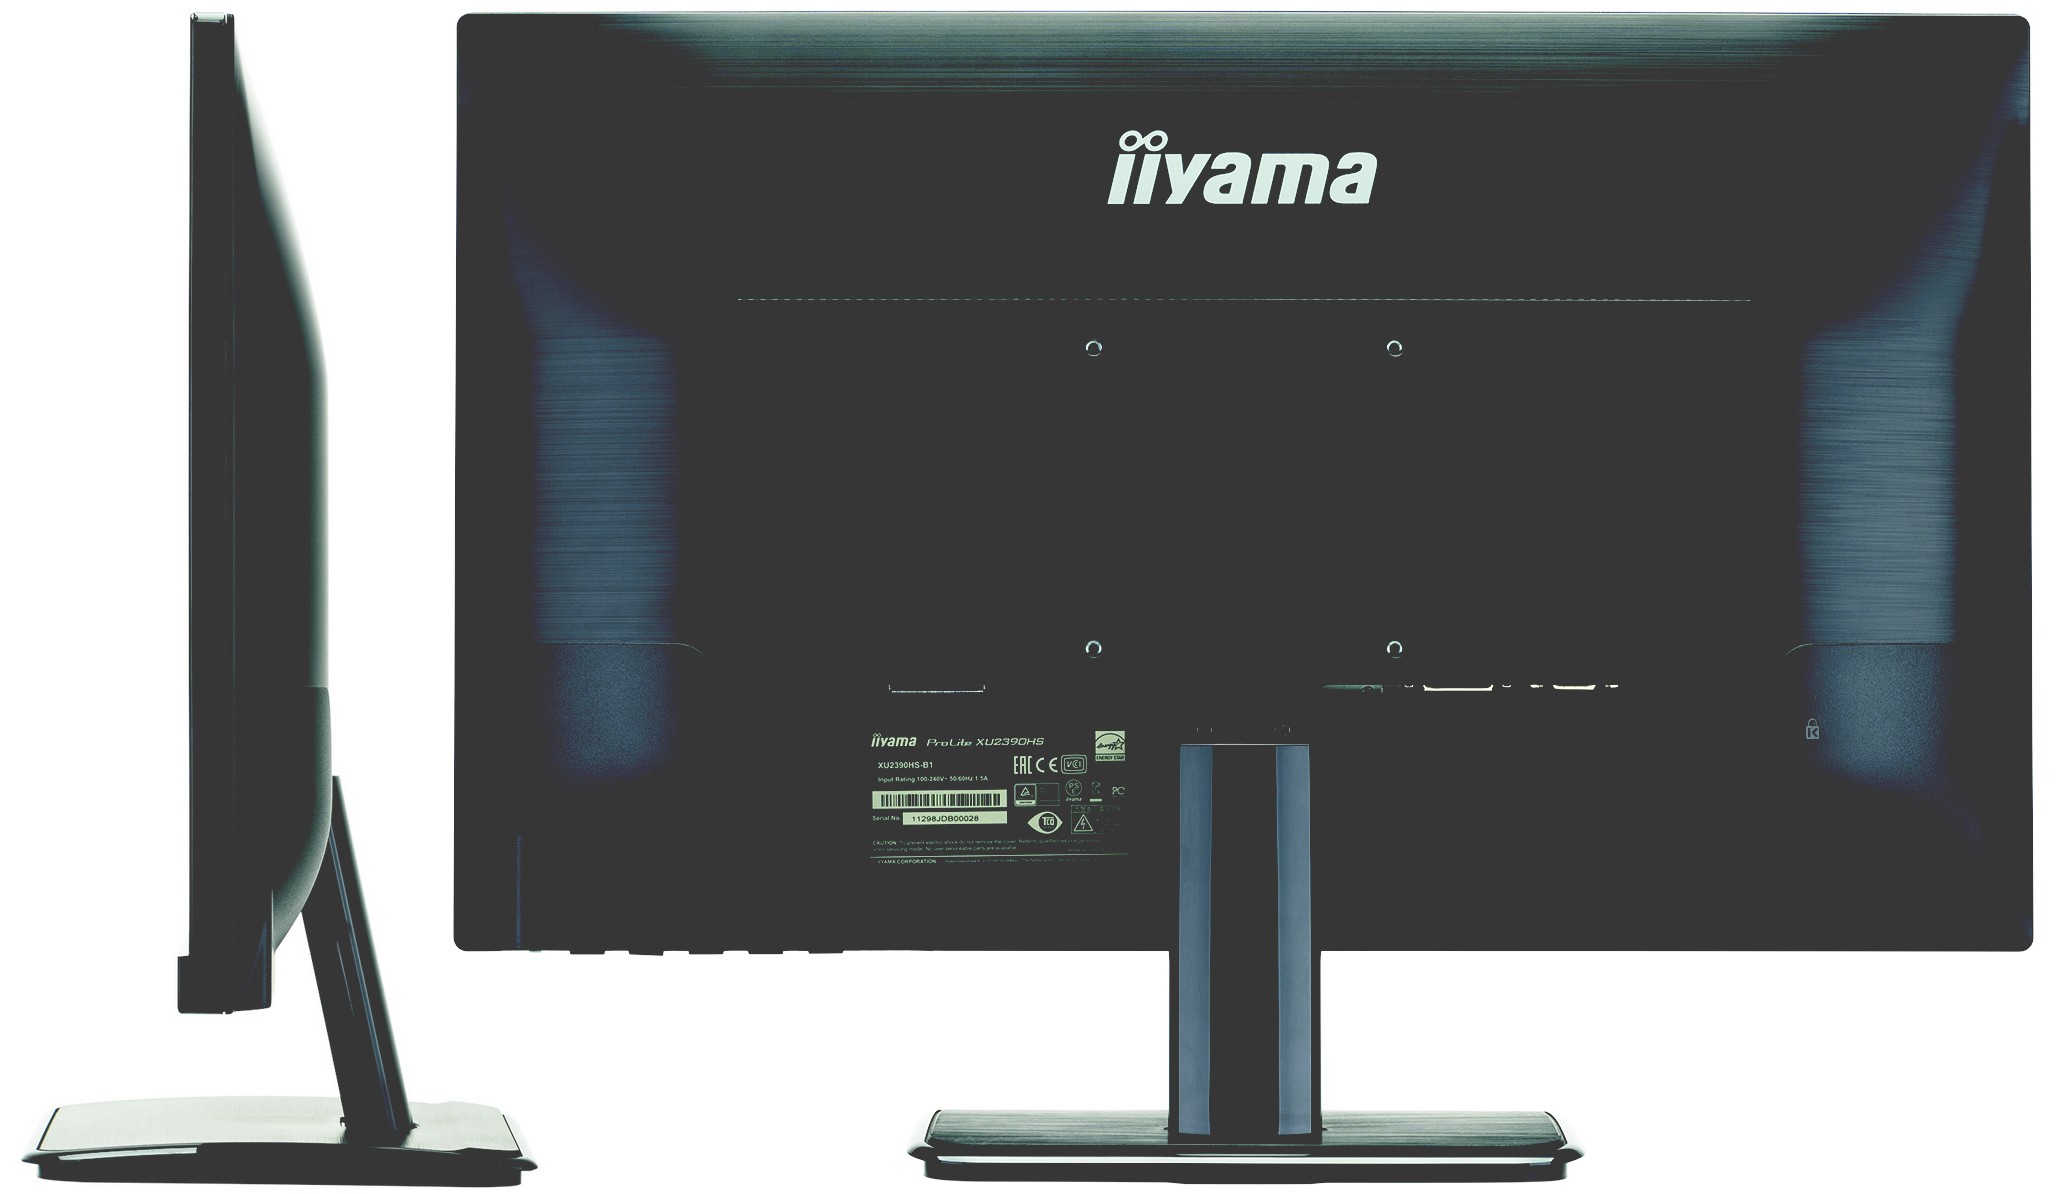 iiyama XU2390HS - ультратонкий 23-дюймовый монитор с IPS-матрицей вышел в России